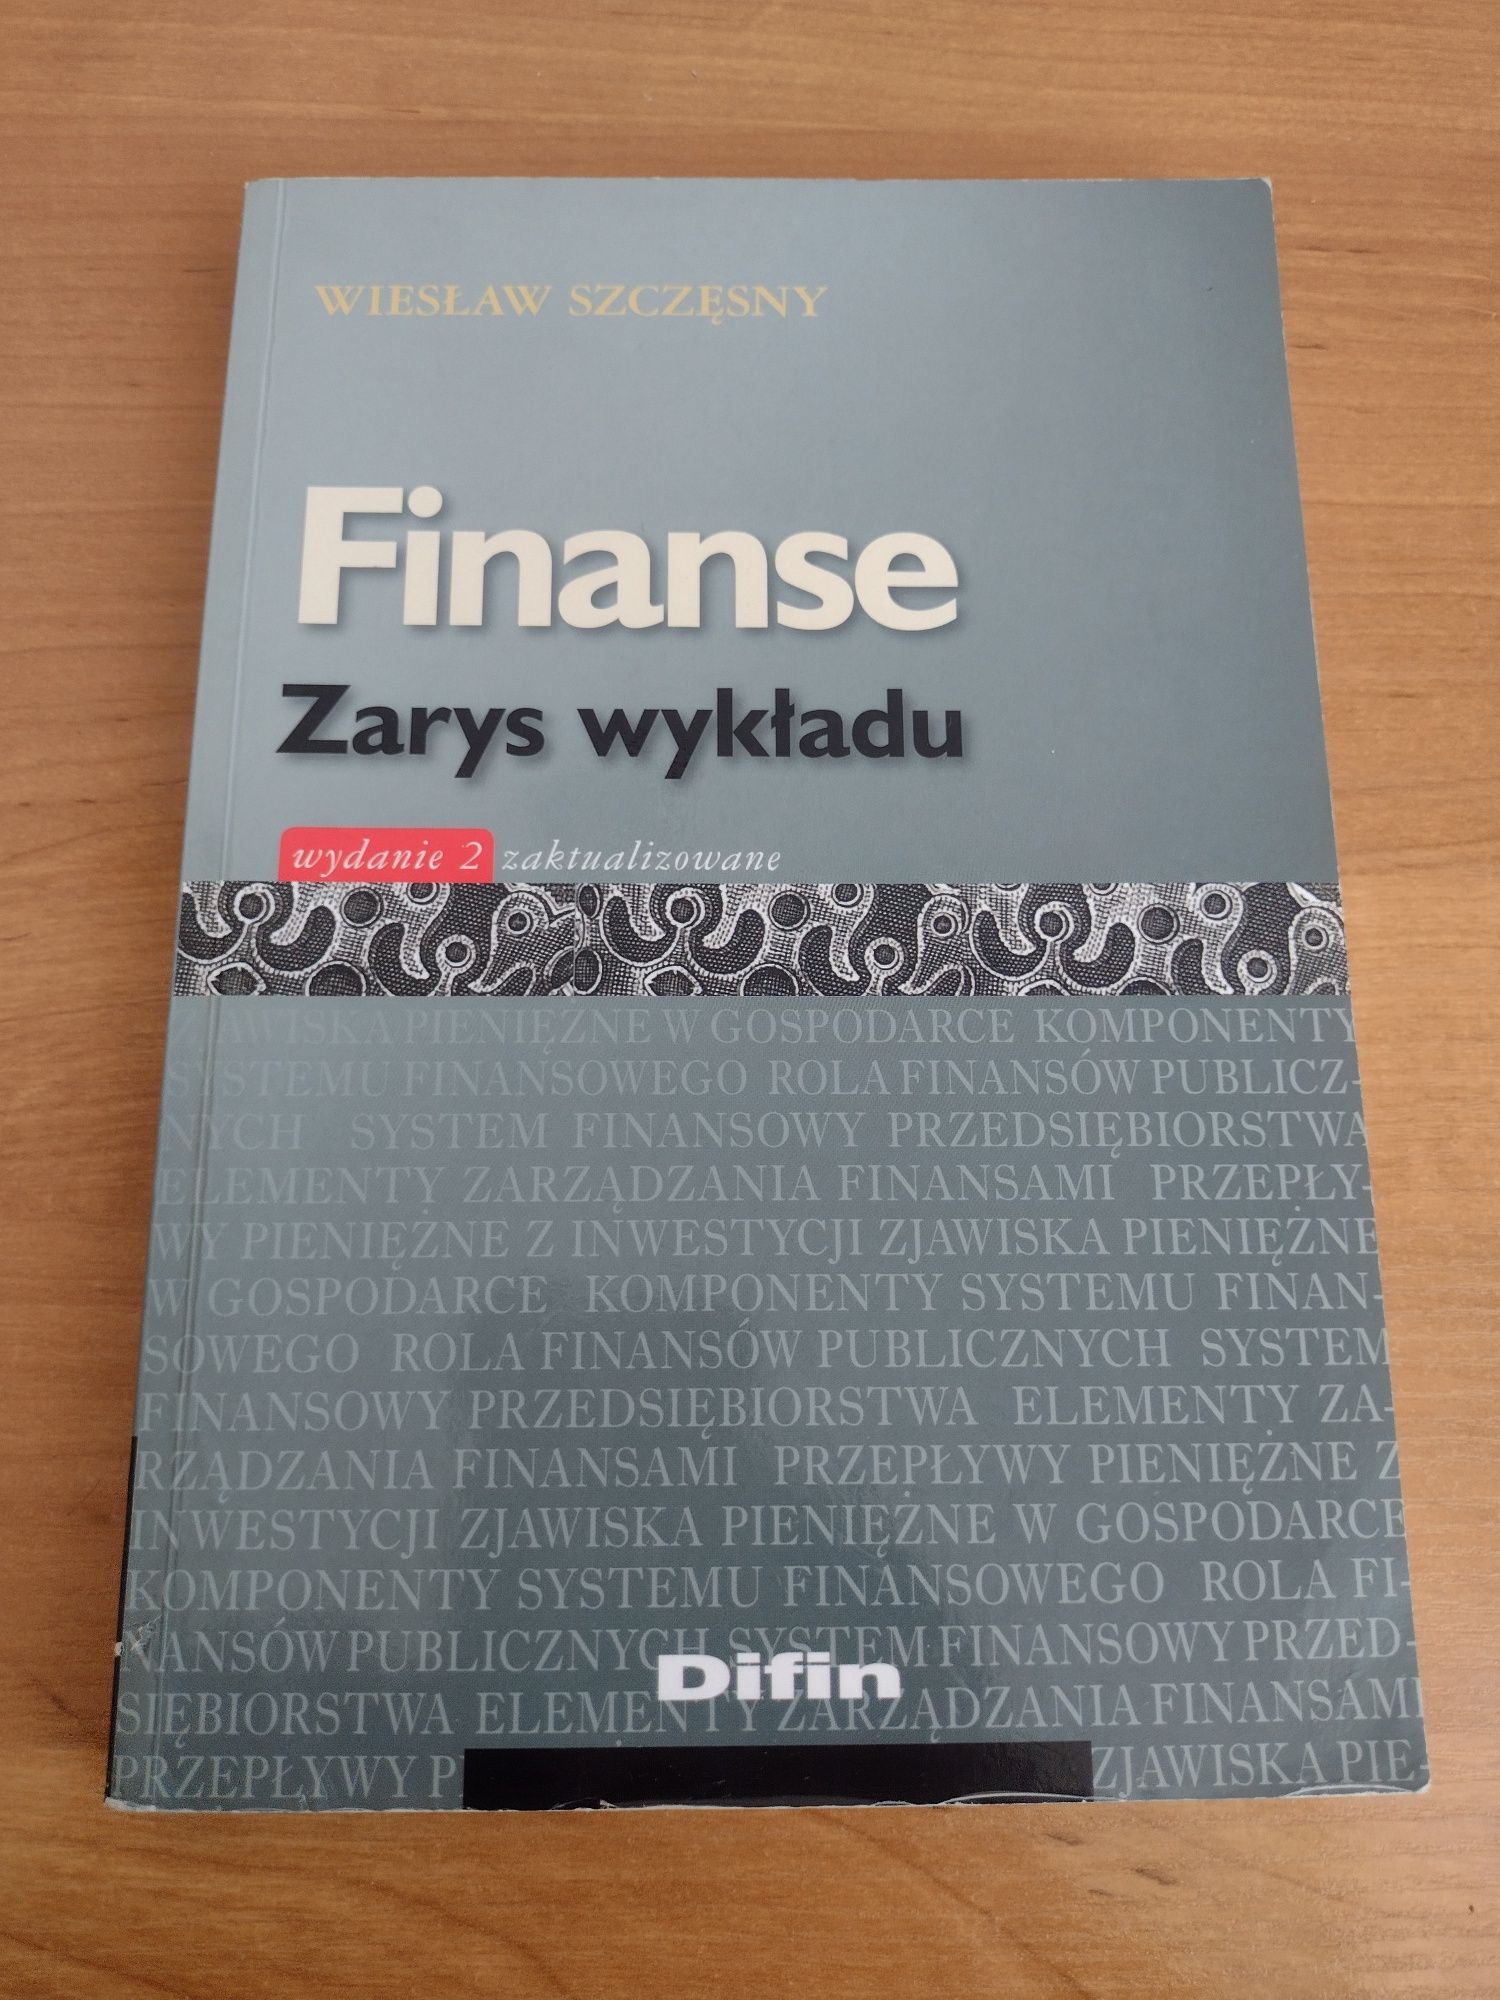 "Finanse Zarys wykładu" Wiesław Szczęsny